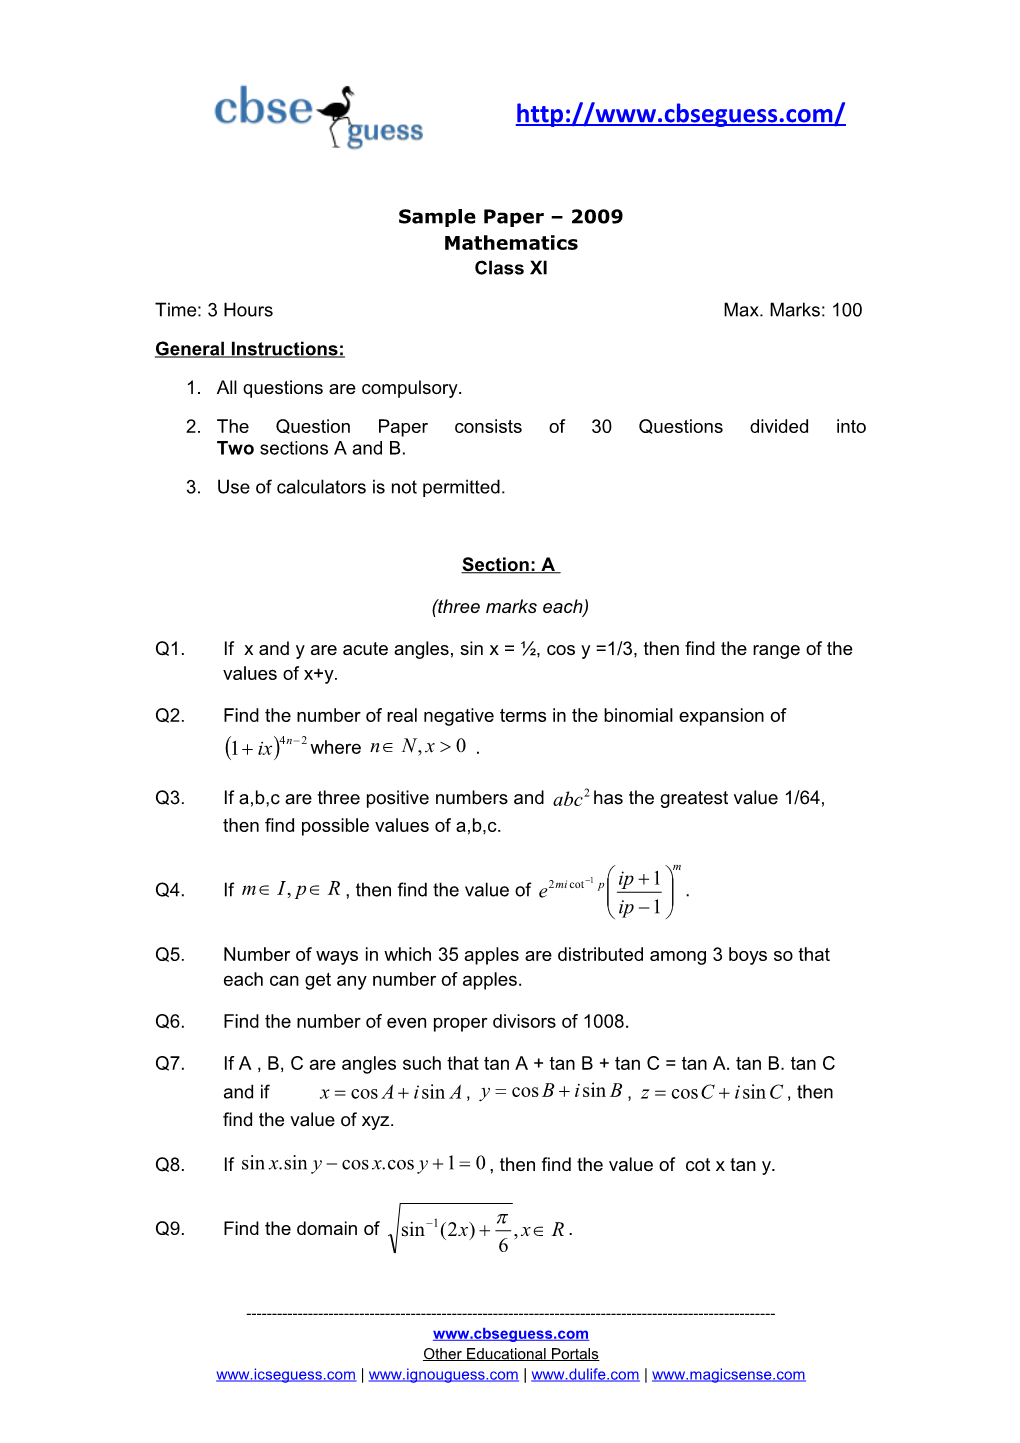 Sample Paper 2009 Mathematics Class XI